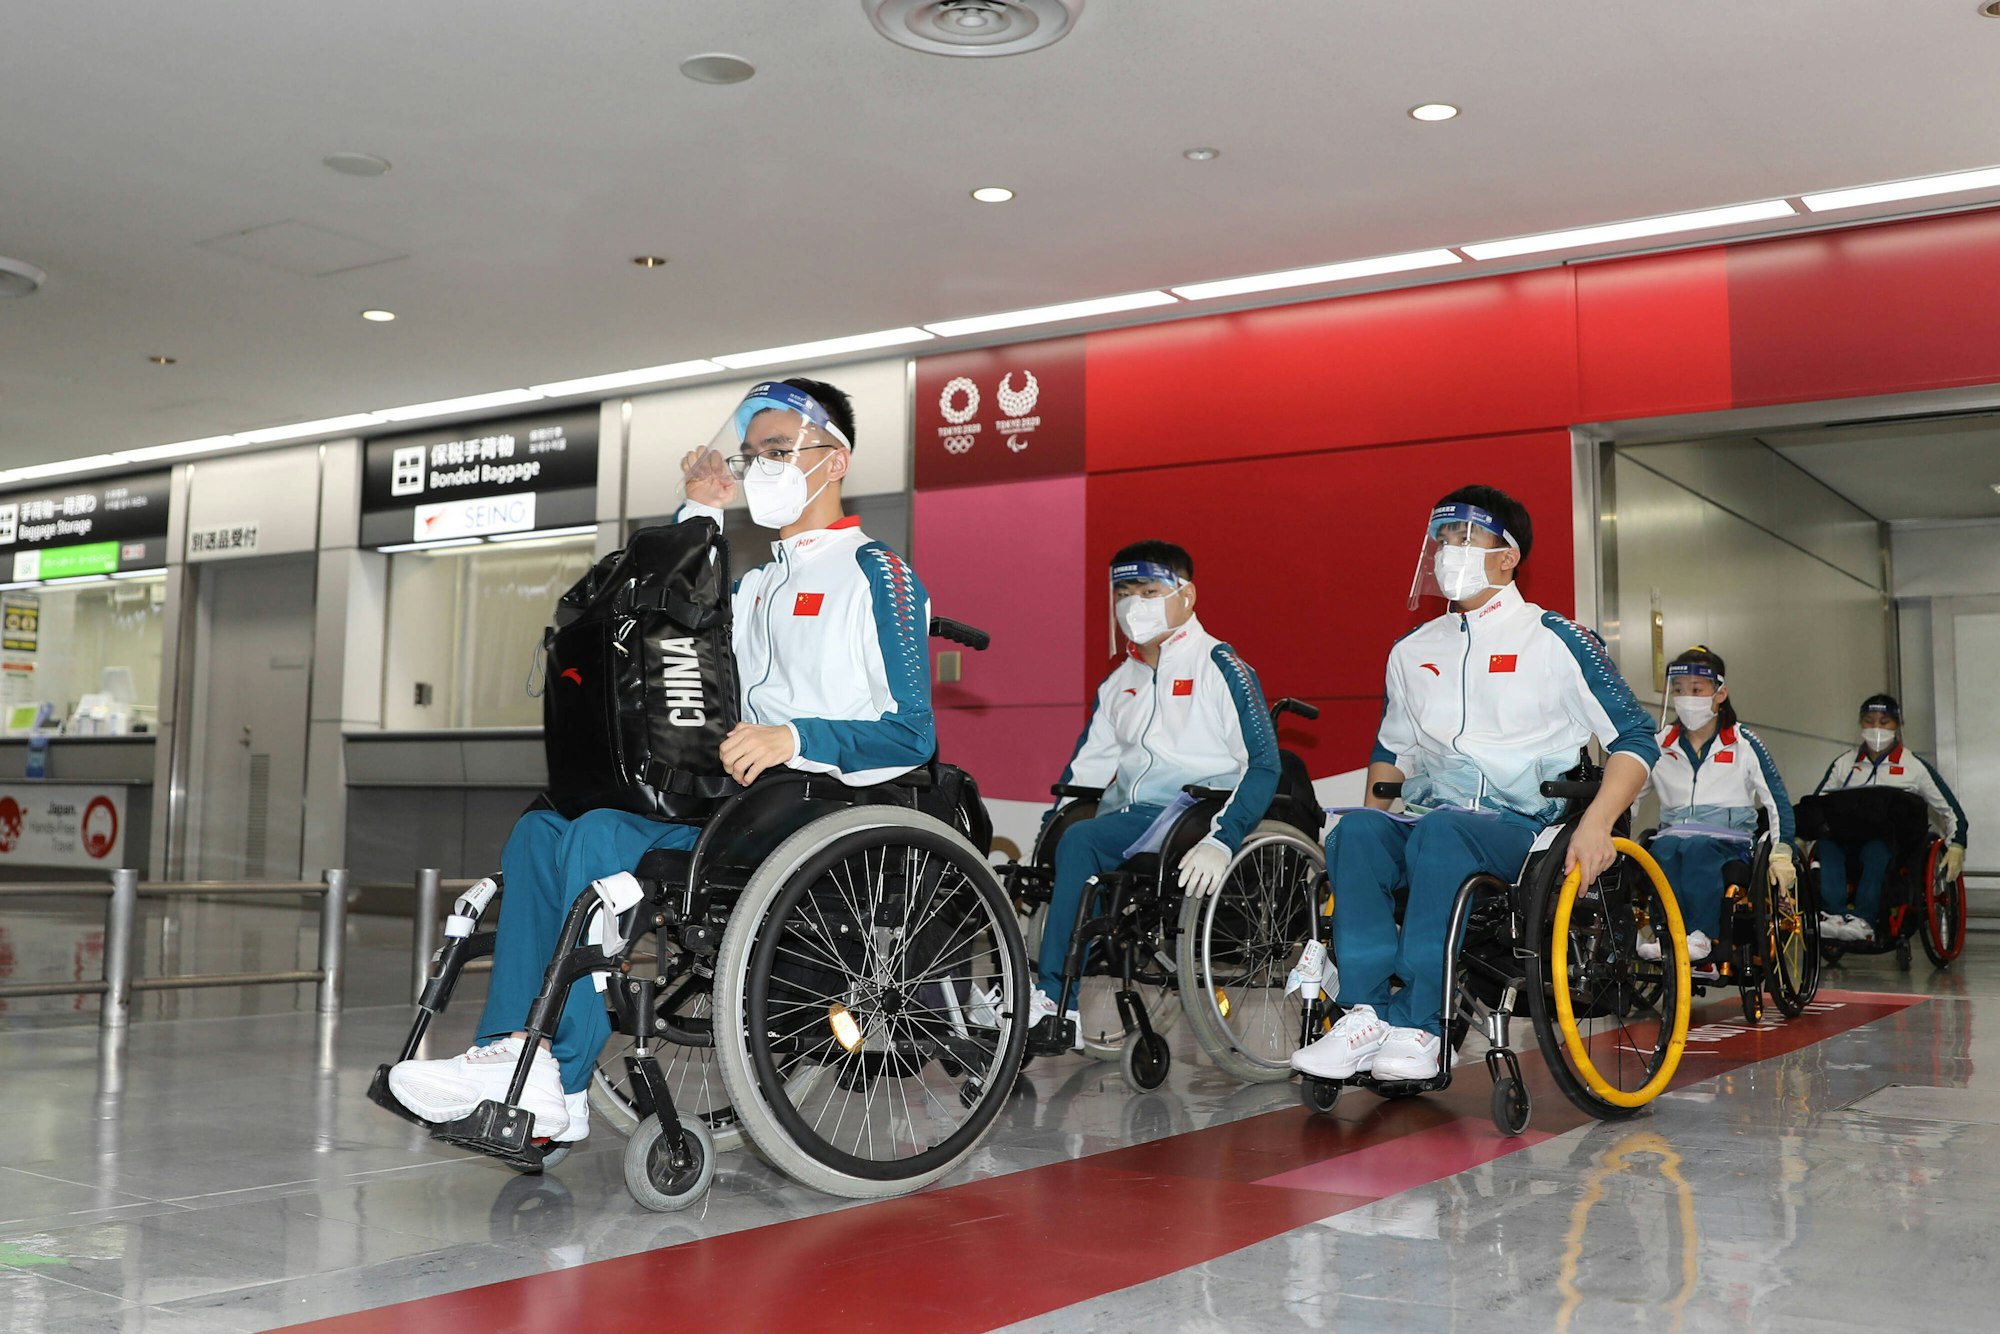 Chinesische Sportler in Rollstühlen mit Mundschutz und Plastikschutz.